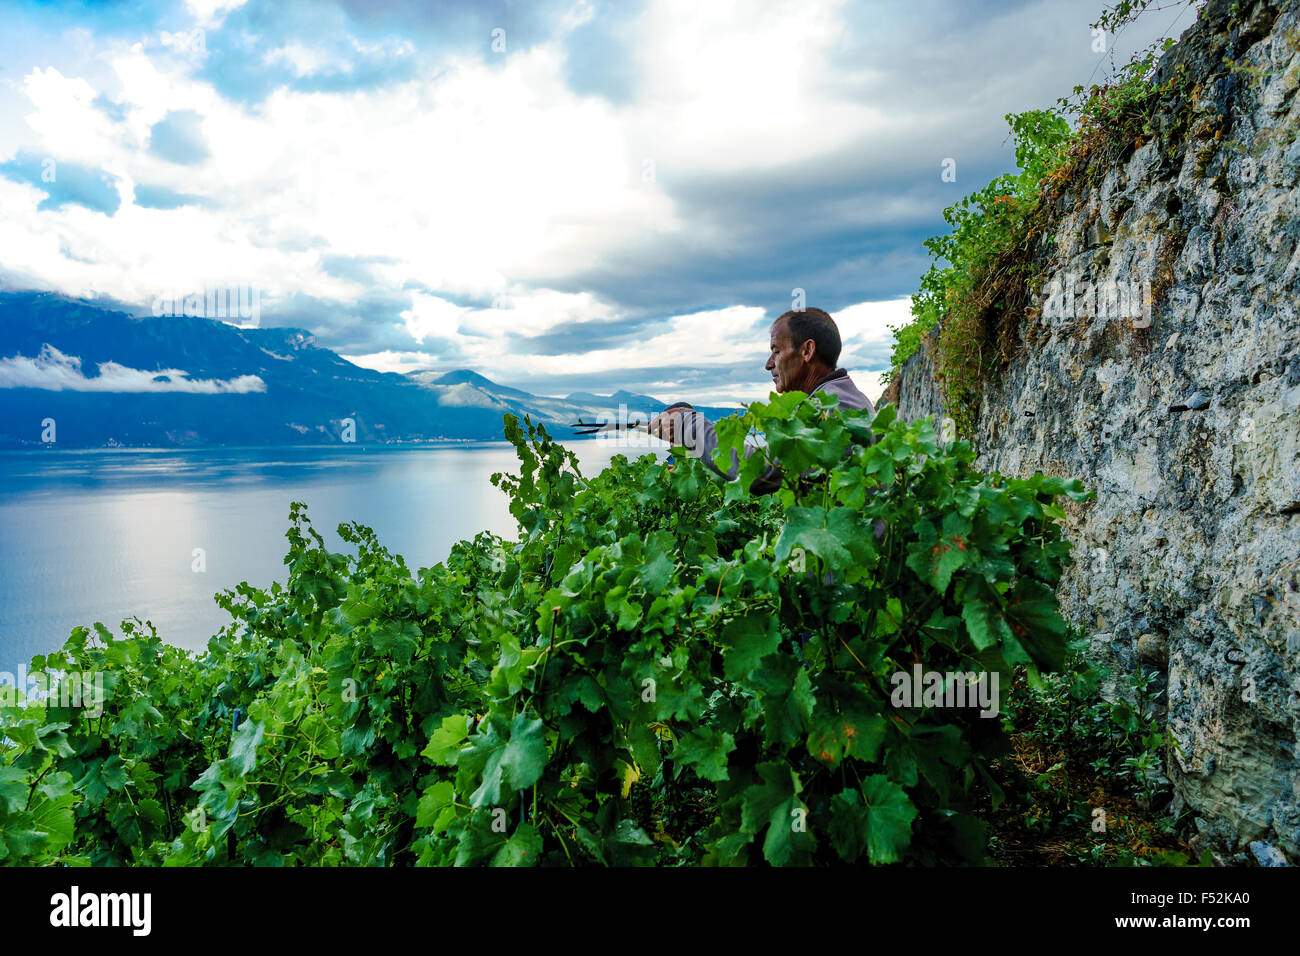 Ein Bauer schneidet die Weinberg-Hecken im Lavaux, einem UNESCO-Weltkulturerbe. Genfer See, Schweiz. Stockfoto